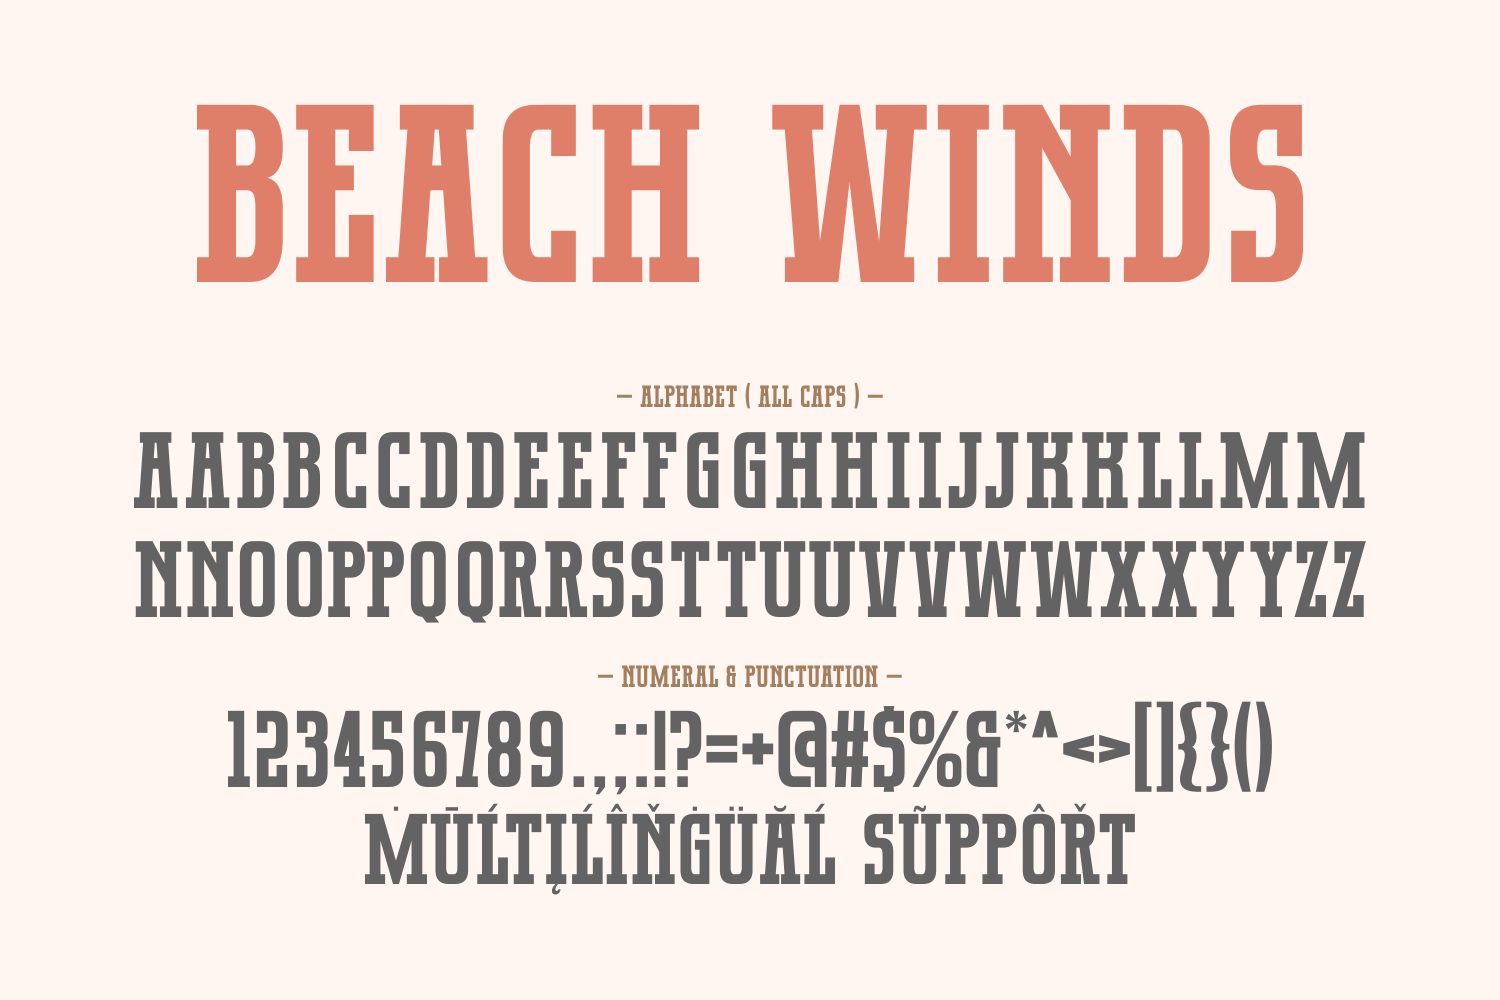 Beach Winds